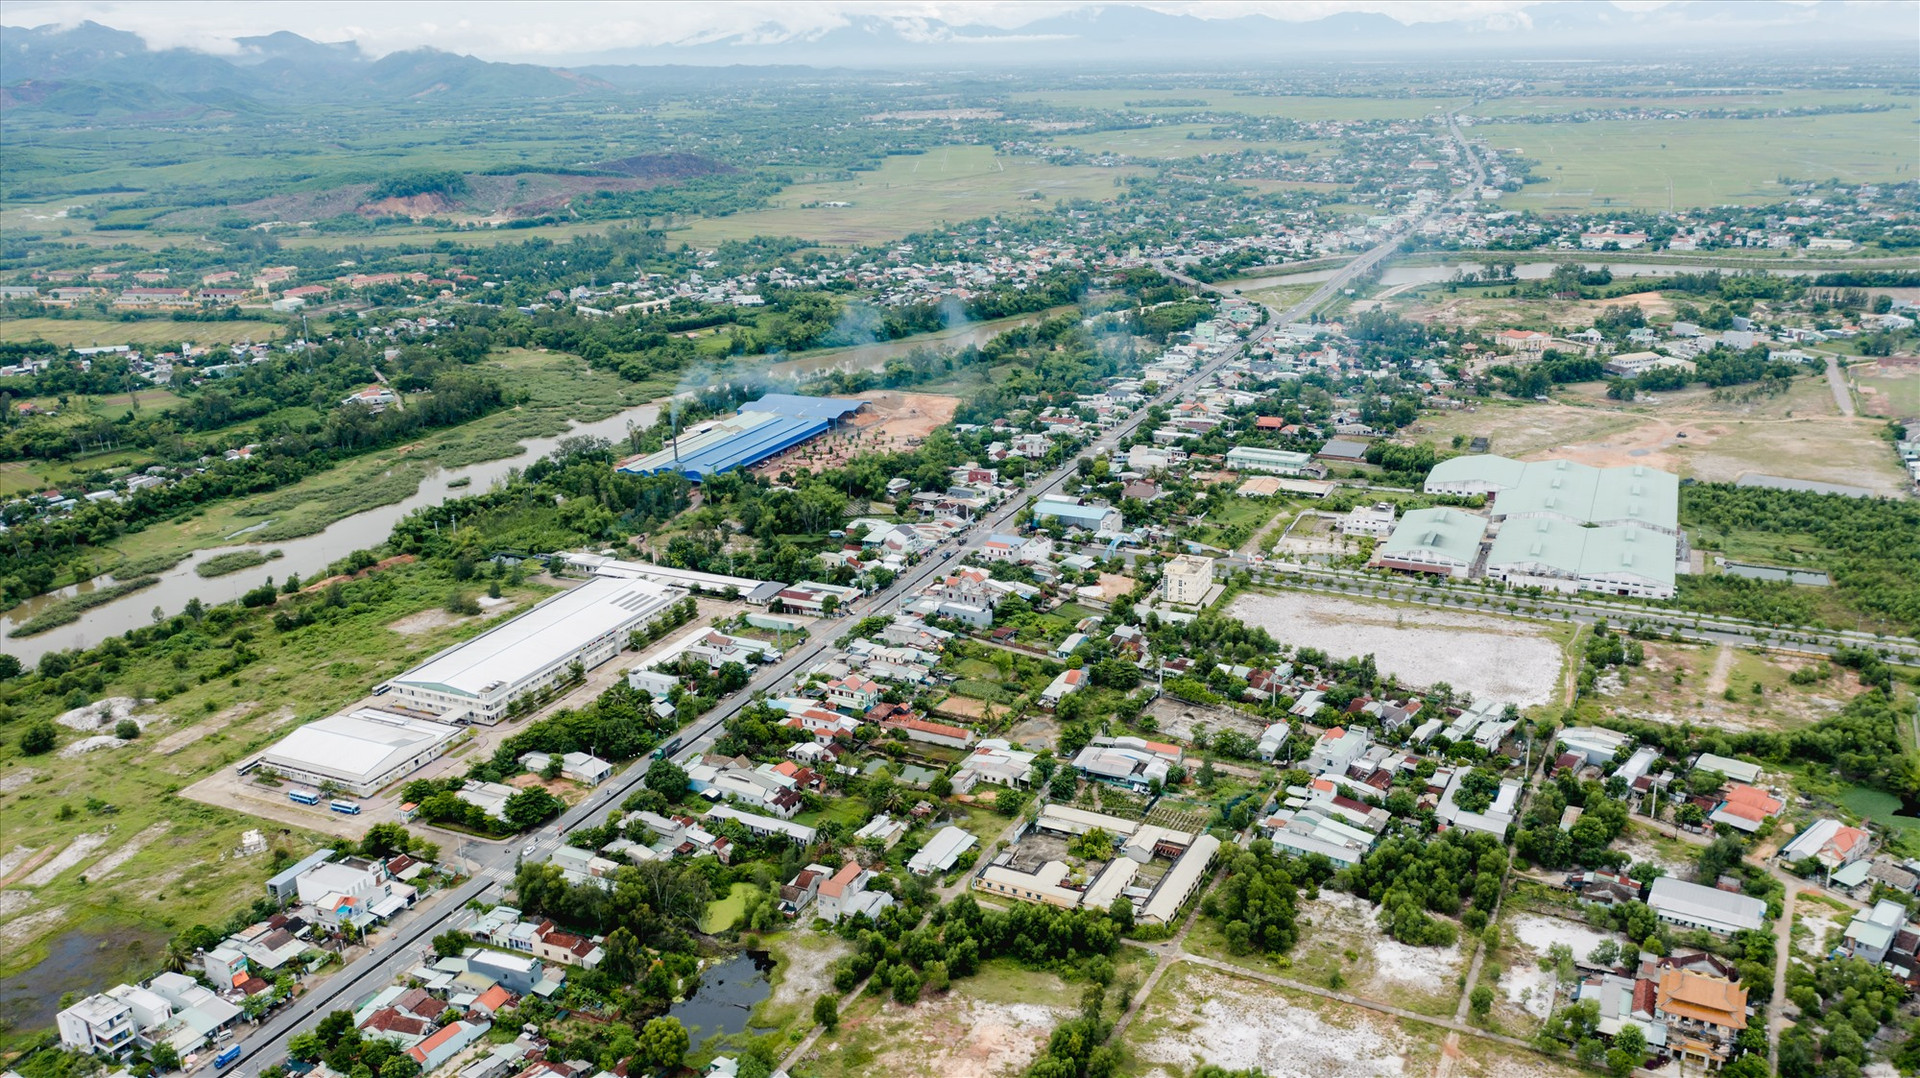 Huyện Quế Sơn đã đặt mục tiêu năm 2022 đạt giá trị sản xuất công nghiệp - tiểu thủ công nghiệp và xây dựng tăng từ 13% trở lên so với năm 2021